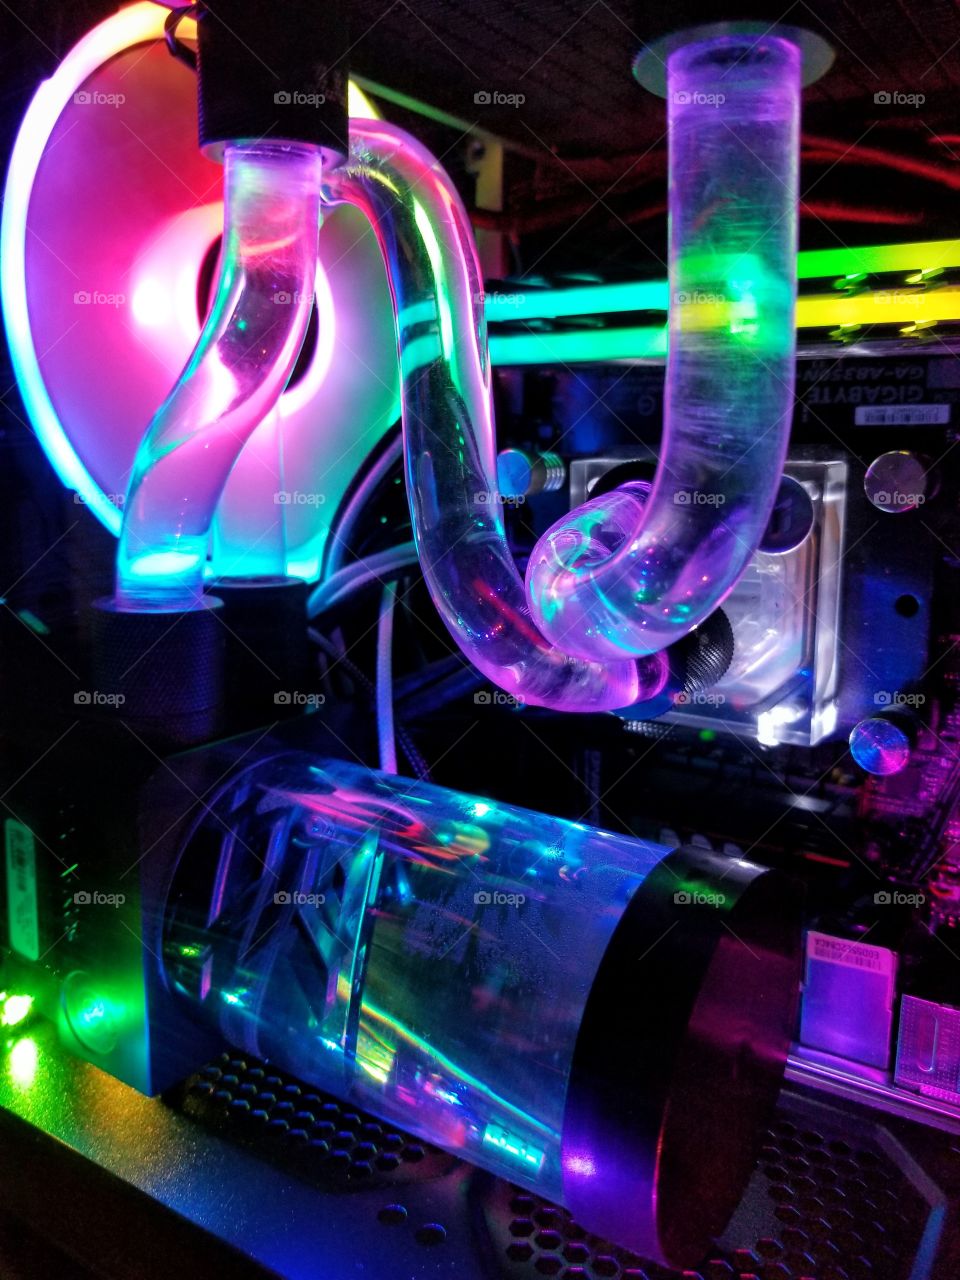 custom water cooling loop, inside a PC. RGB lighting.